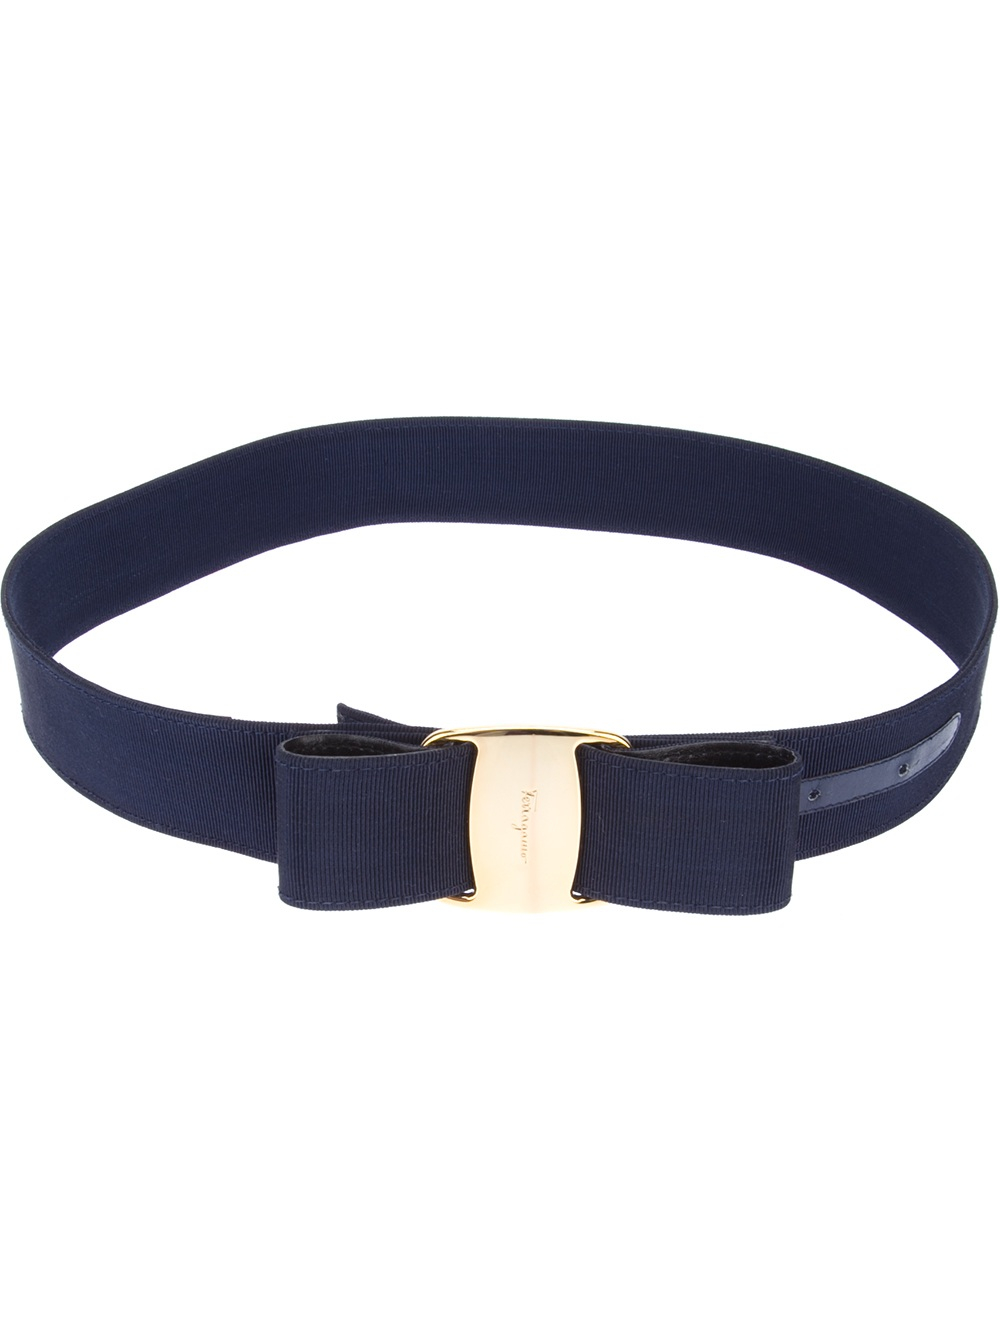 Lyst - Ferragamo Bow Detail Belt in Blue